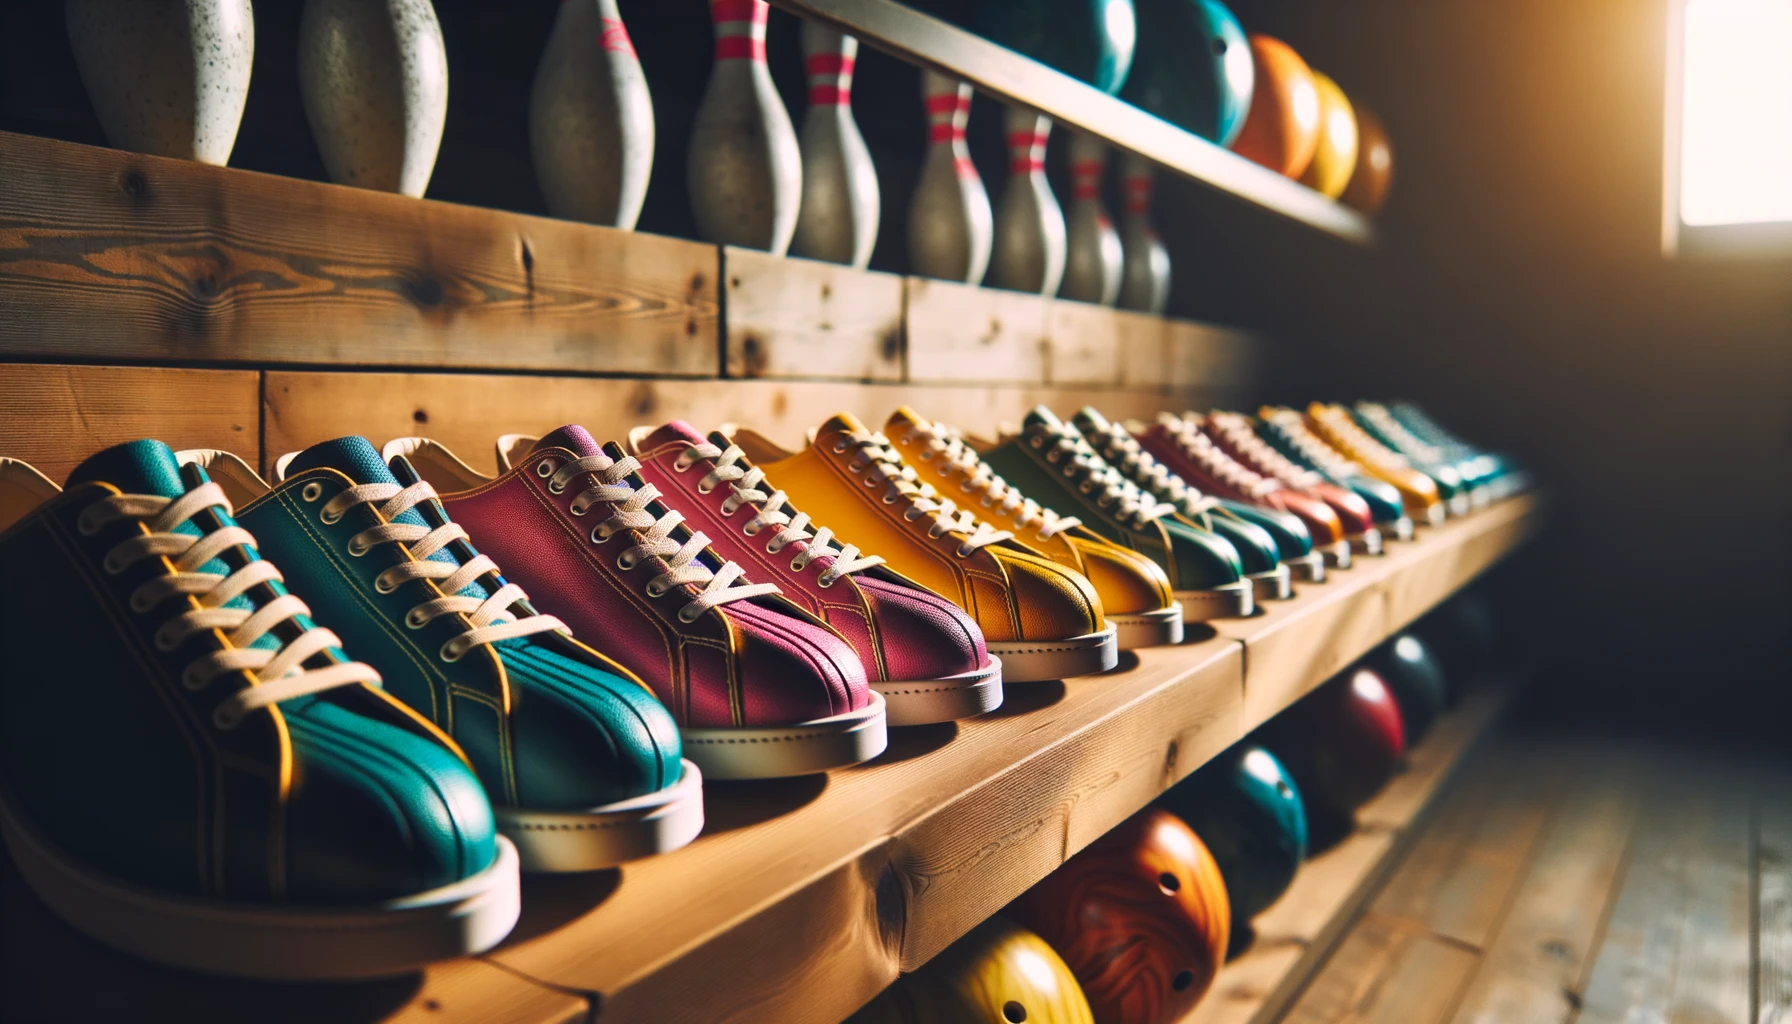 Foto einer Reihe von Bowlingschuhen in leuchtenden Farben, die fein säuberlich auf einem Holzregal aufgereiht sind, wobei das Umgebungslicht subtile Schatten wirft.